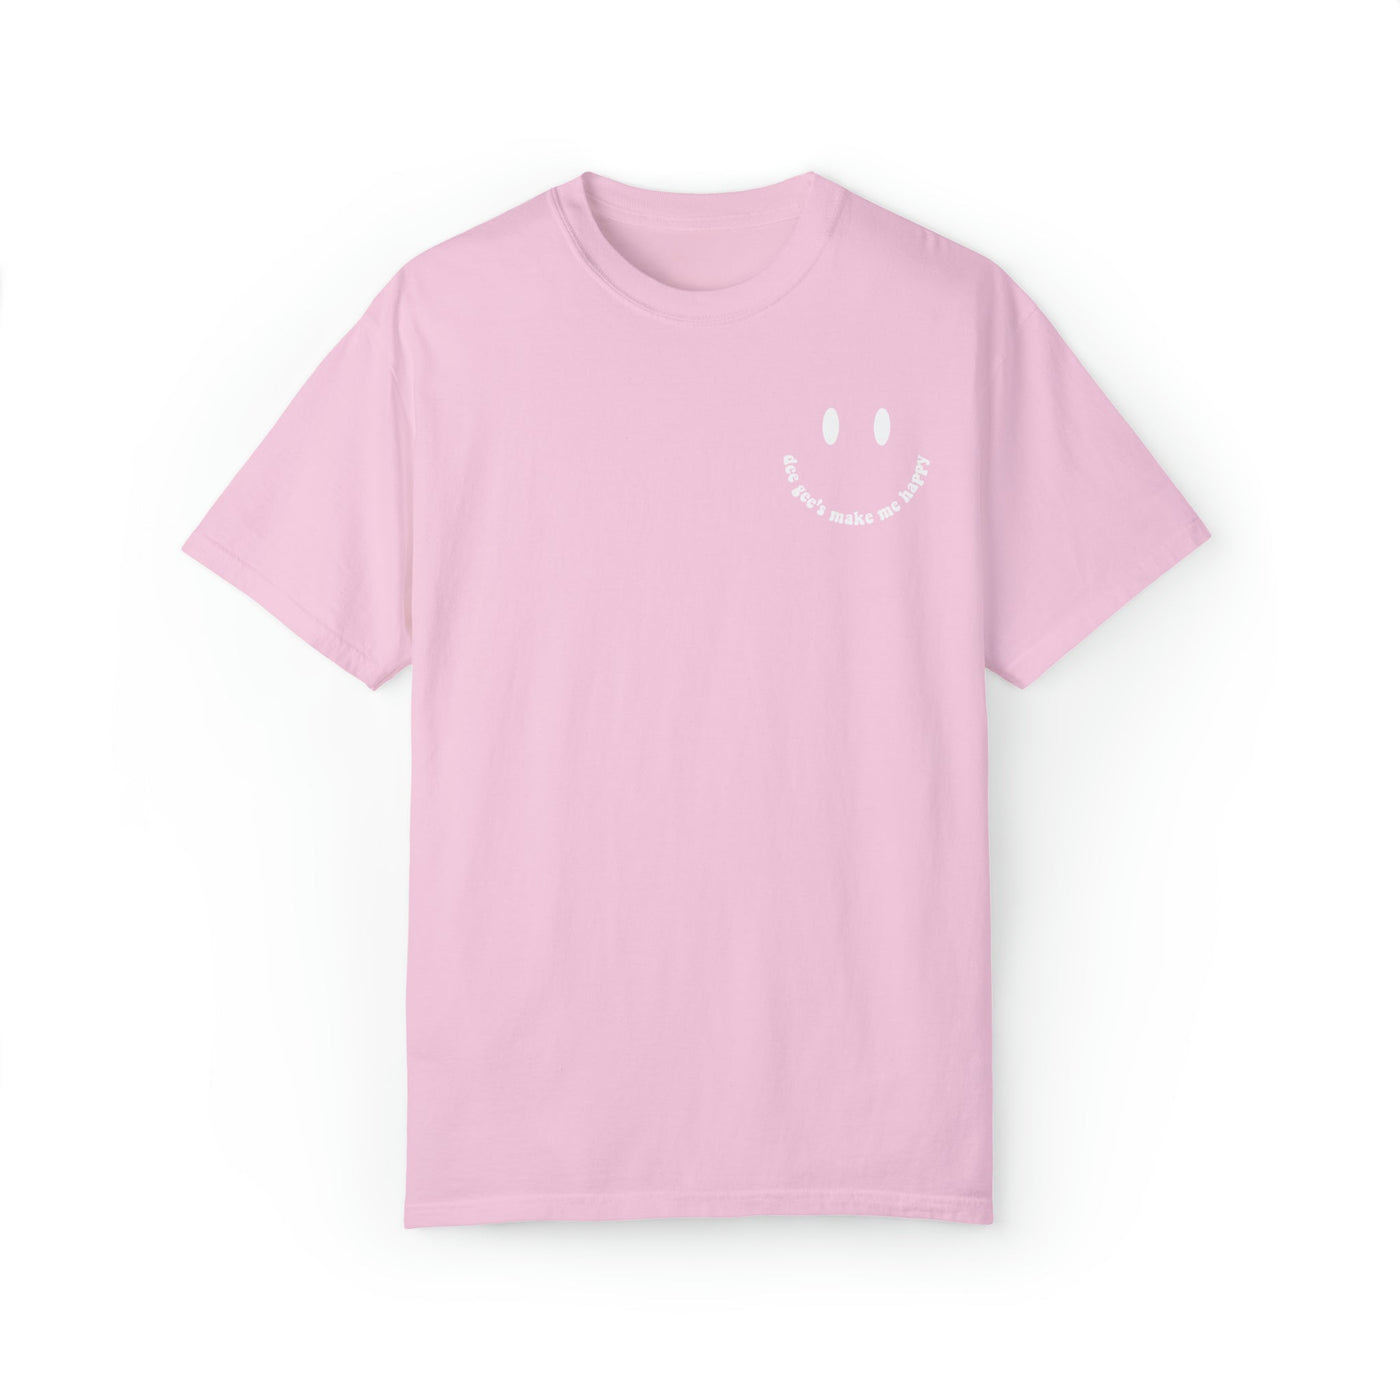 Delta Gamma's Make Me Happy Sorority Comfy T-shirt